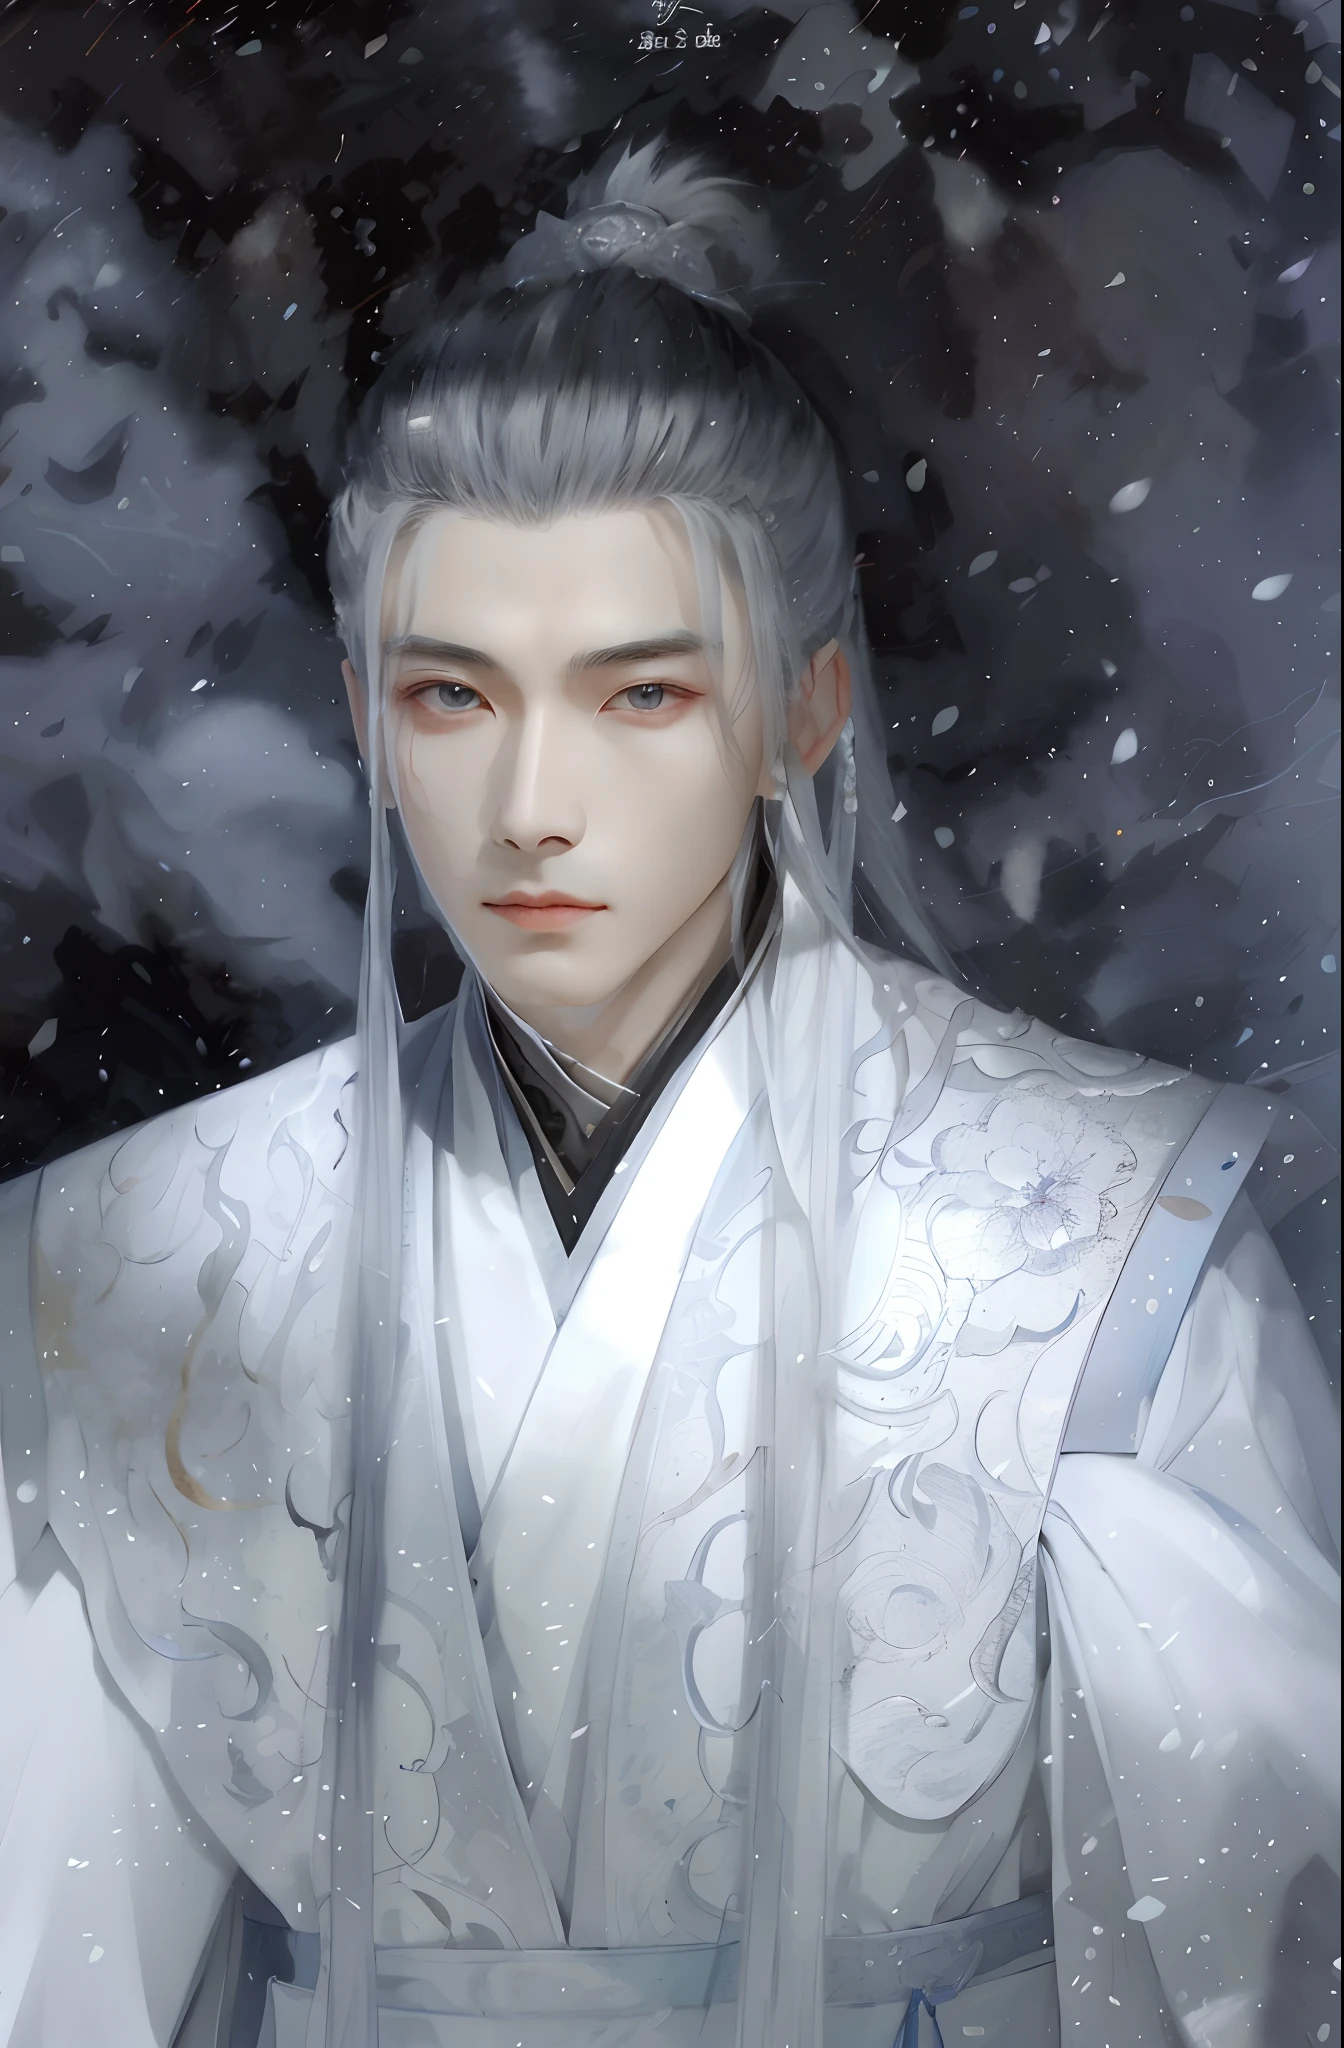 Close-up of a man in a white robe holding a sword, Cai Xukun, Inspired by Zhang Han, Inspired by Seki Dosheng, heise jinyao, xianxia fantasy, Beautiful androgynous prince, Yan, zhao yun, inspired by Wu Daozi, Inspired by Bian Shoumin, White Hanfu, drak，red fox